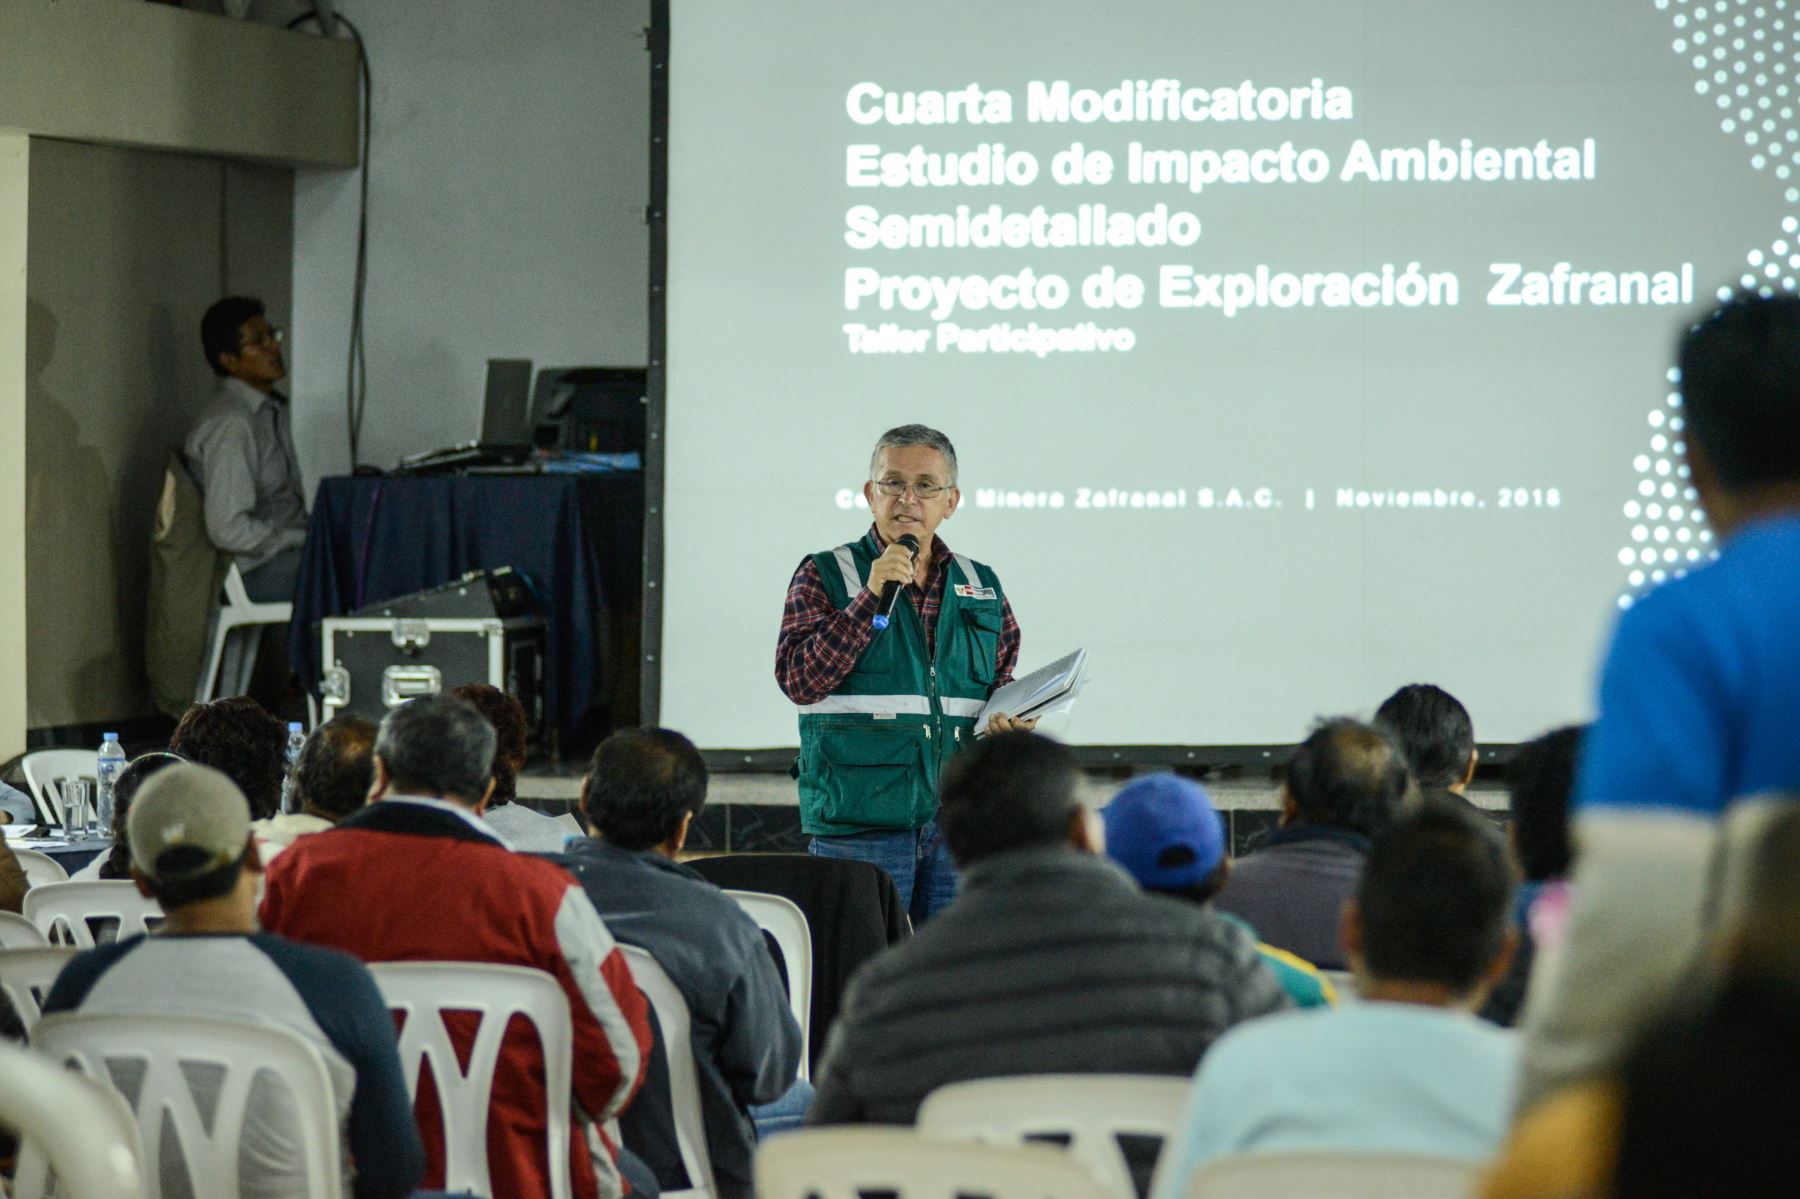 La Dirección General de Asuntos Ambientales Mineros del Ministerio de Energía y Minas organizó talleres participativos sobre proyecto minero Zafranal (Arequipa). Foto: Proyecto Zafranal.